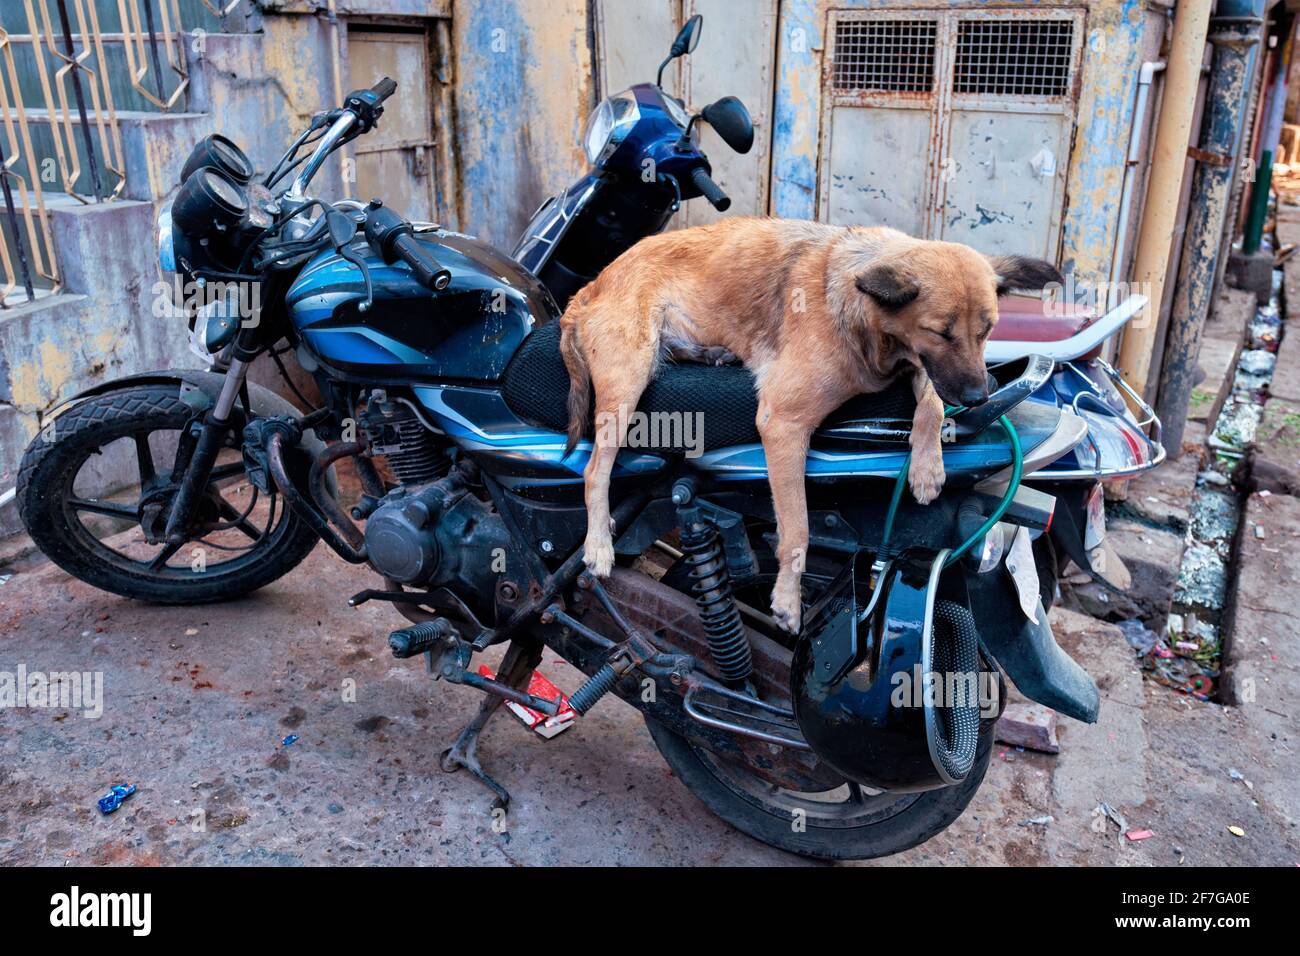 Sleeping Dogs [Español] - Yendo en moto y Arrestando delincuentes 